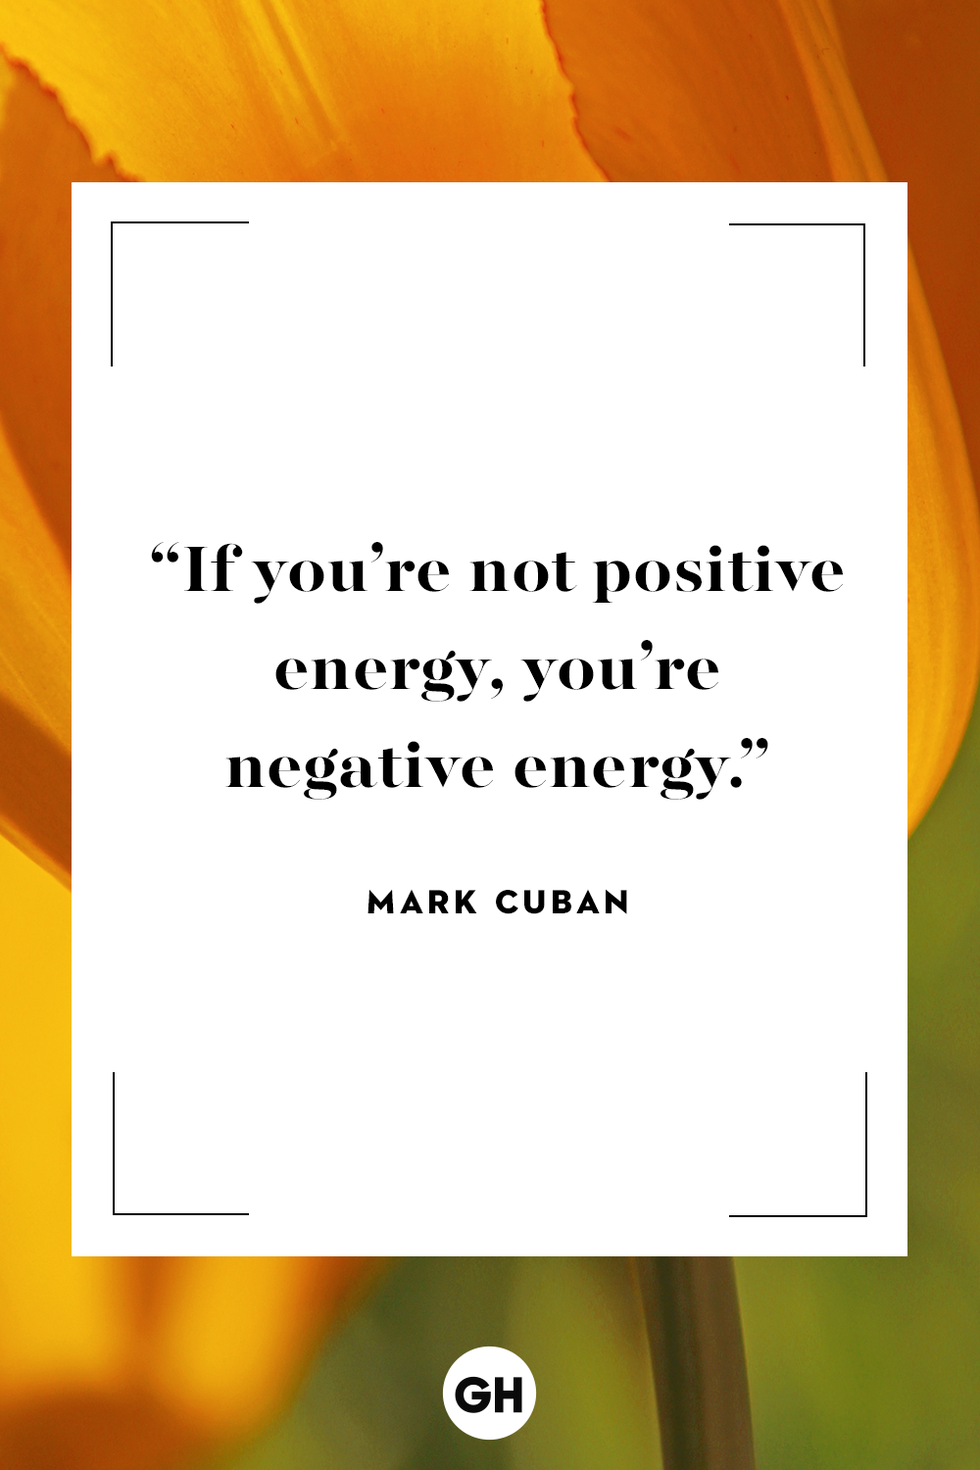 inspirational quotes  mark cuban